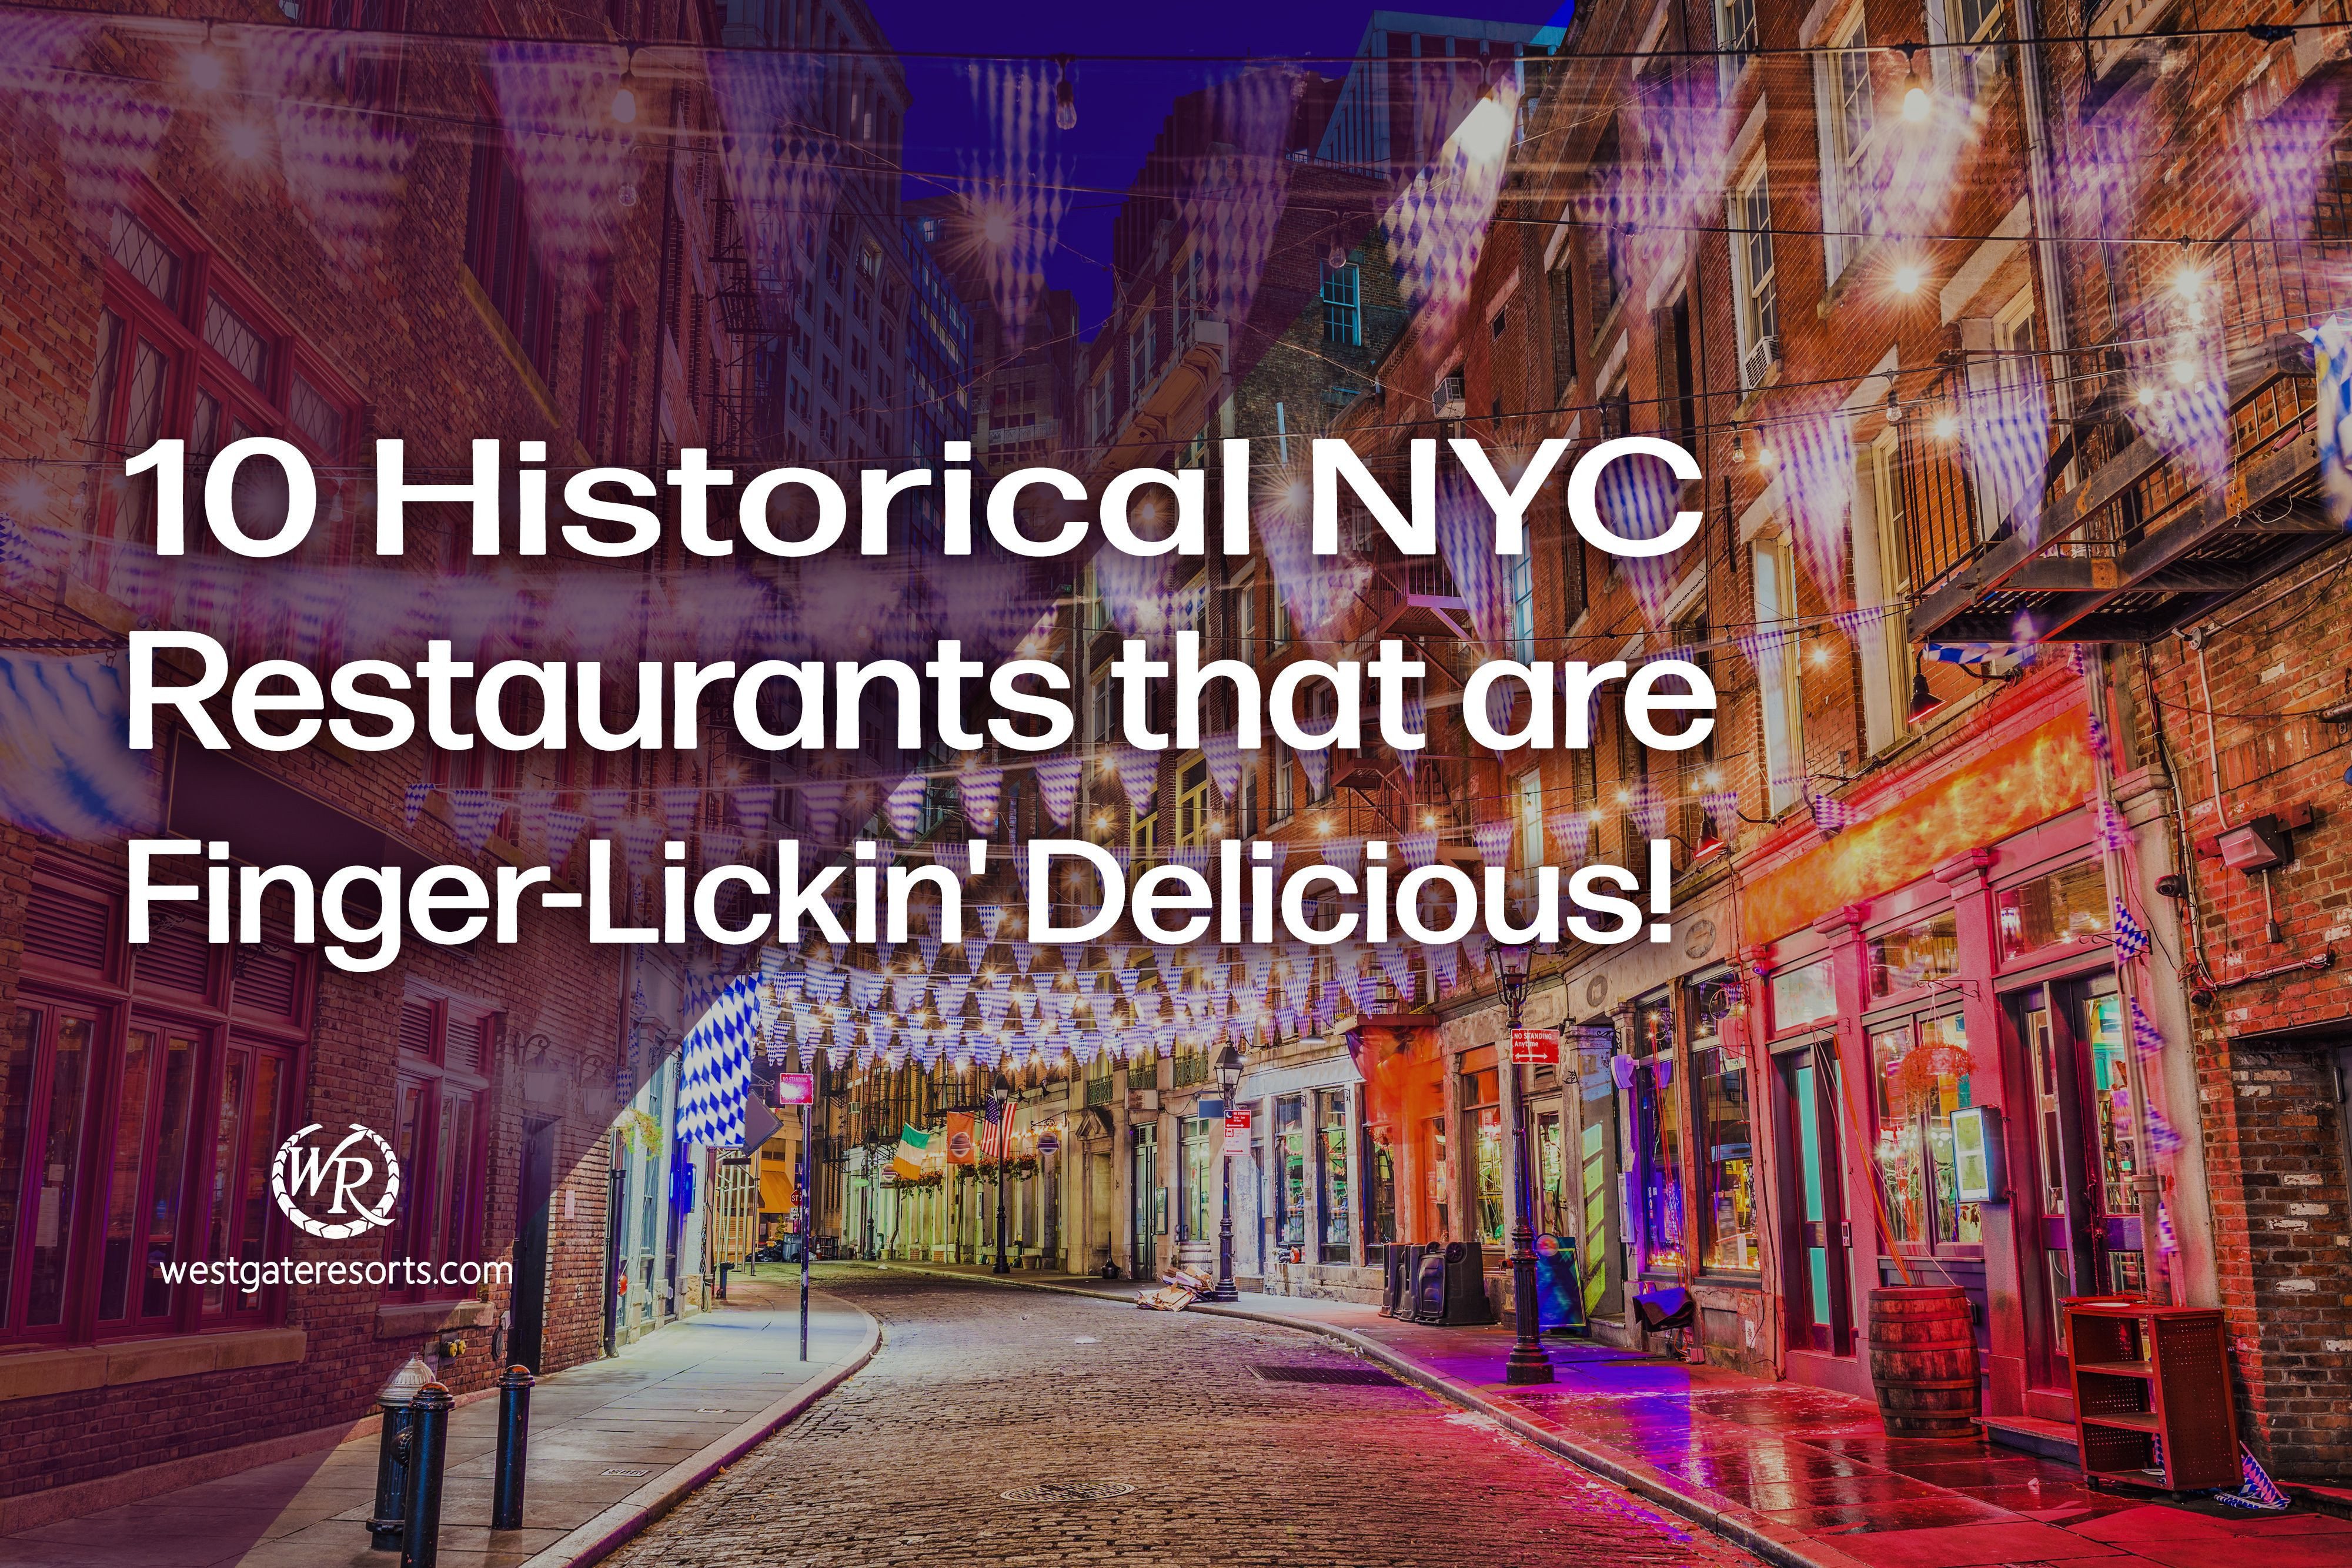 ¡10 restaurantes históricos de la ciudad de Nueva York que están deliciosos para chuparse los dedos!